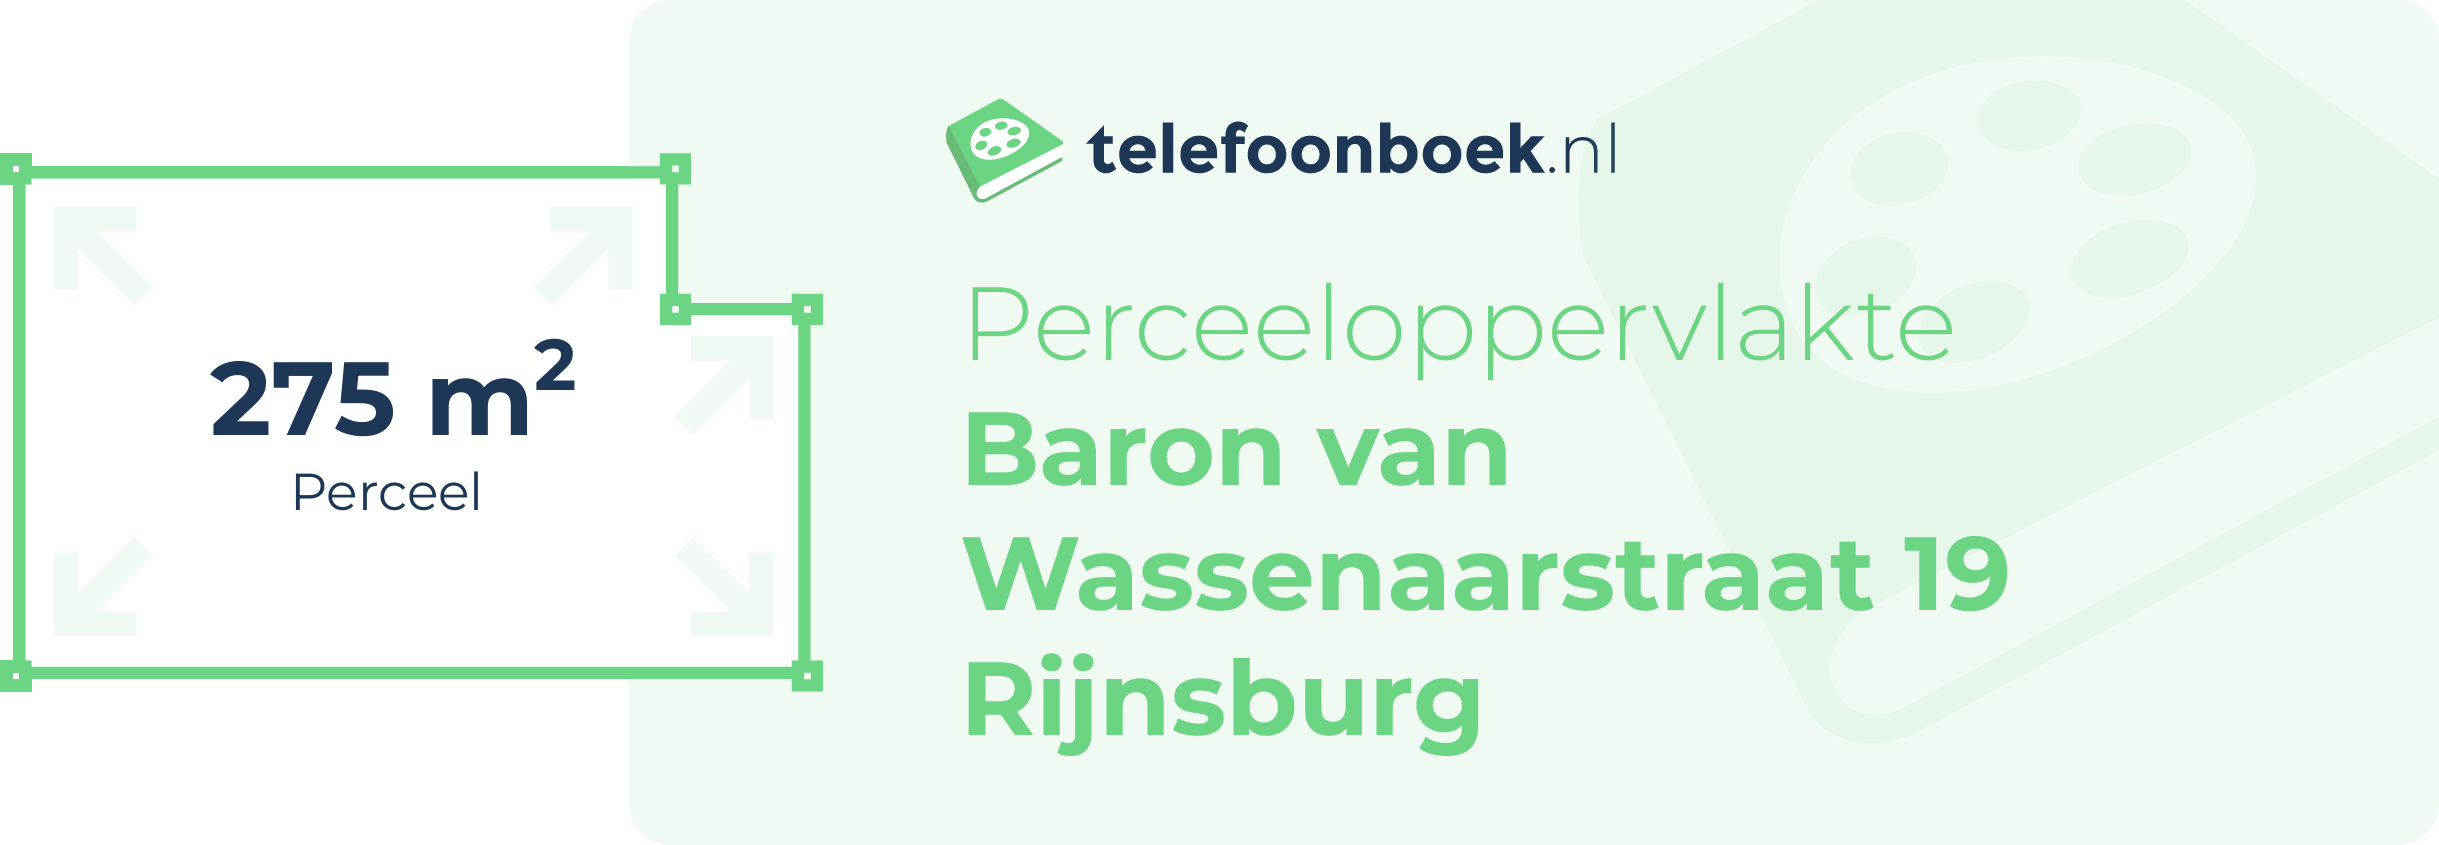 Perceeloppervlakte Baron Van Wassenaarstraat 19 Rijnsburg